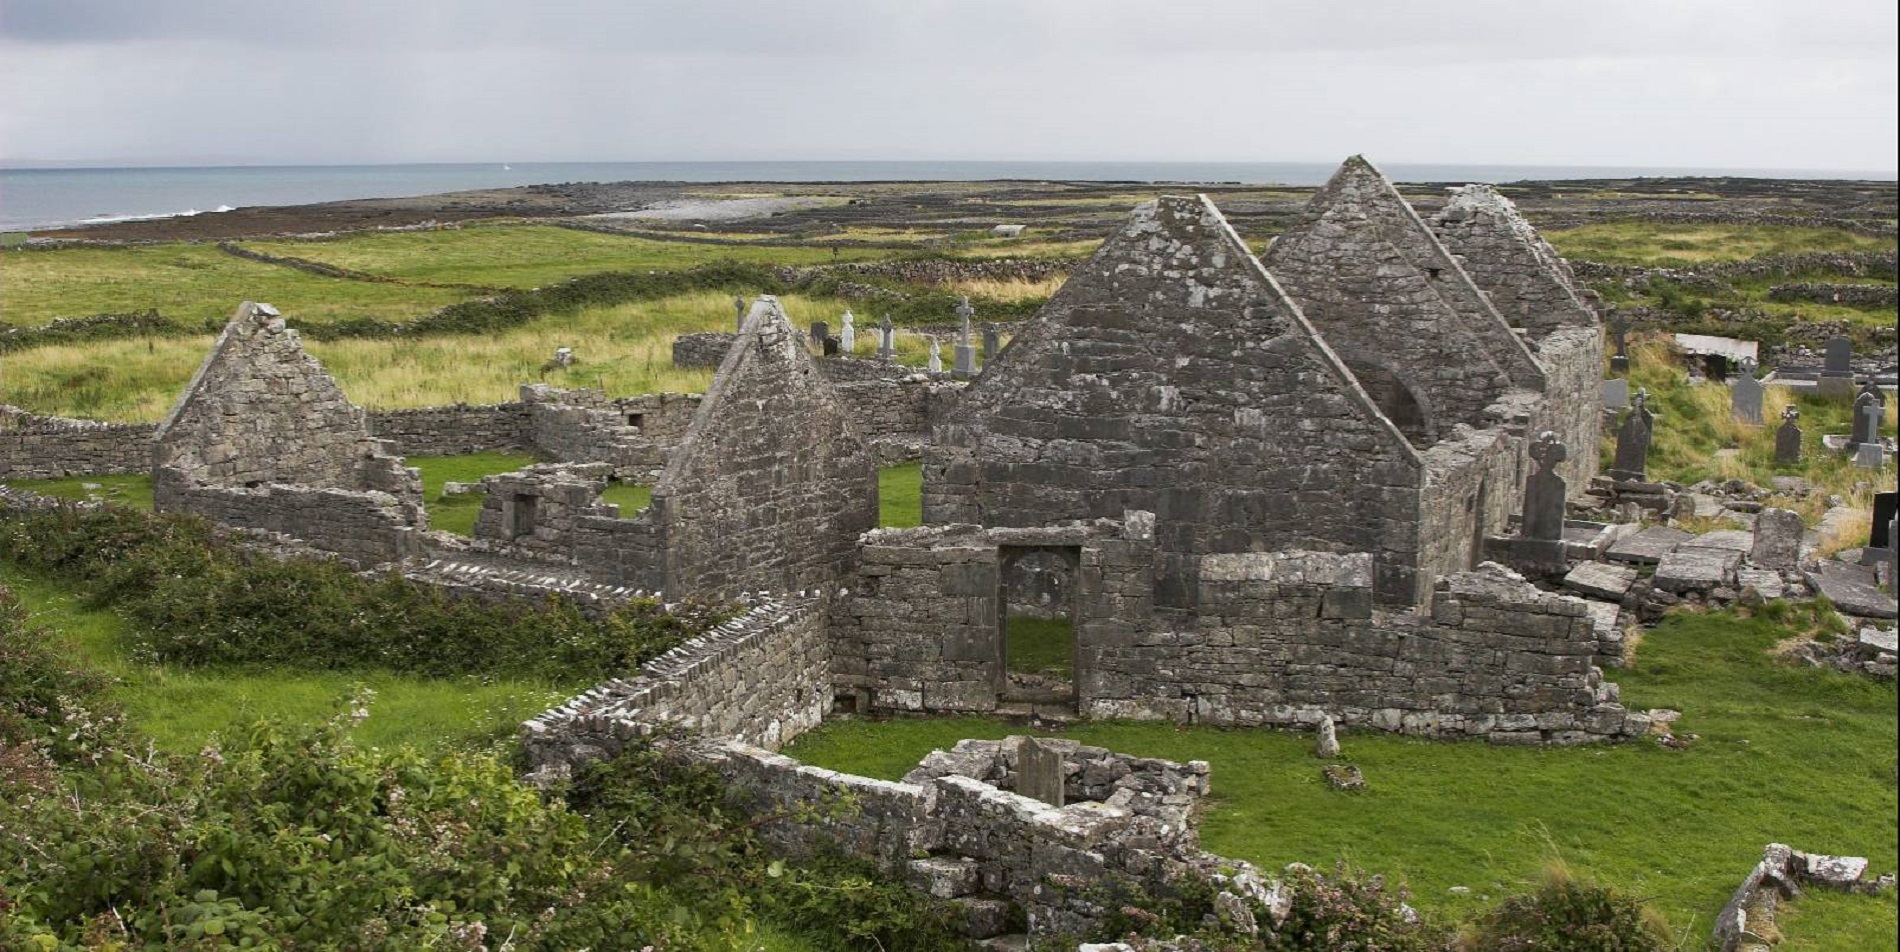 Photo : "Seven Churches" (ruines d'un ensemble monastique du Xe siècle), sur lnishmore, l'une des îles d'Aran, Irlande. © Photo Herbert Ortner / Flickr.